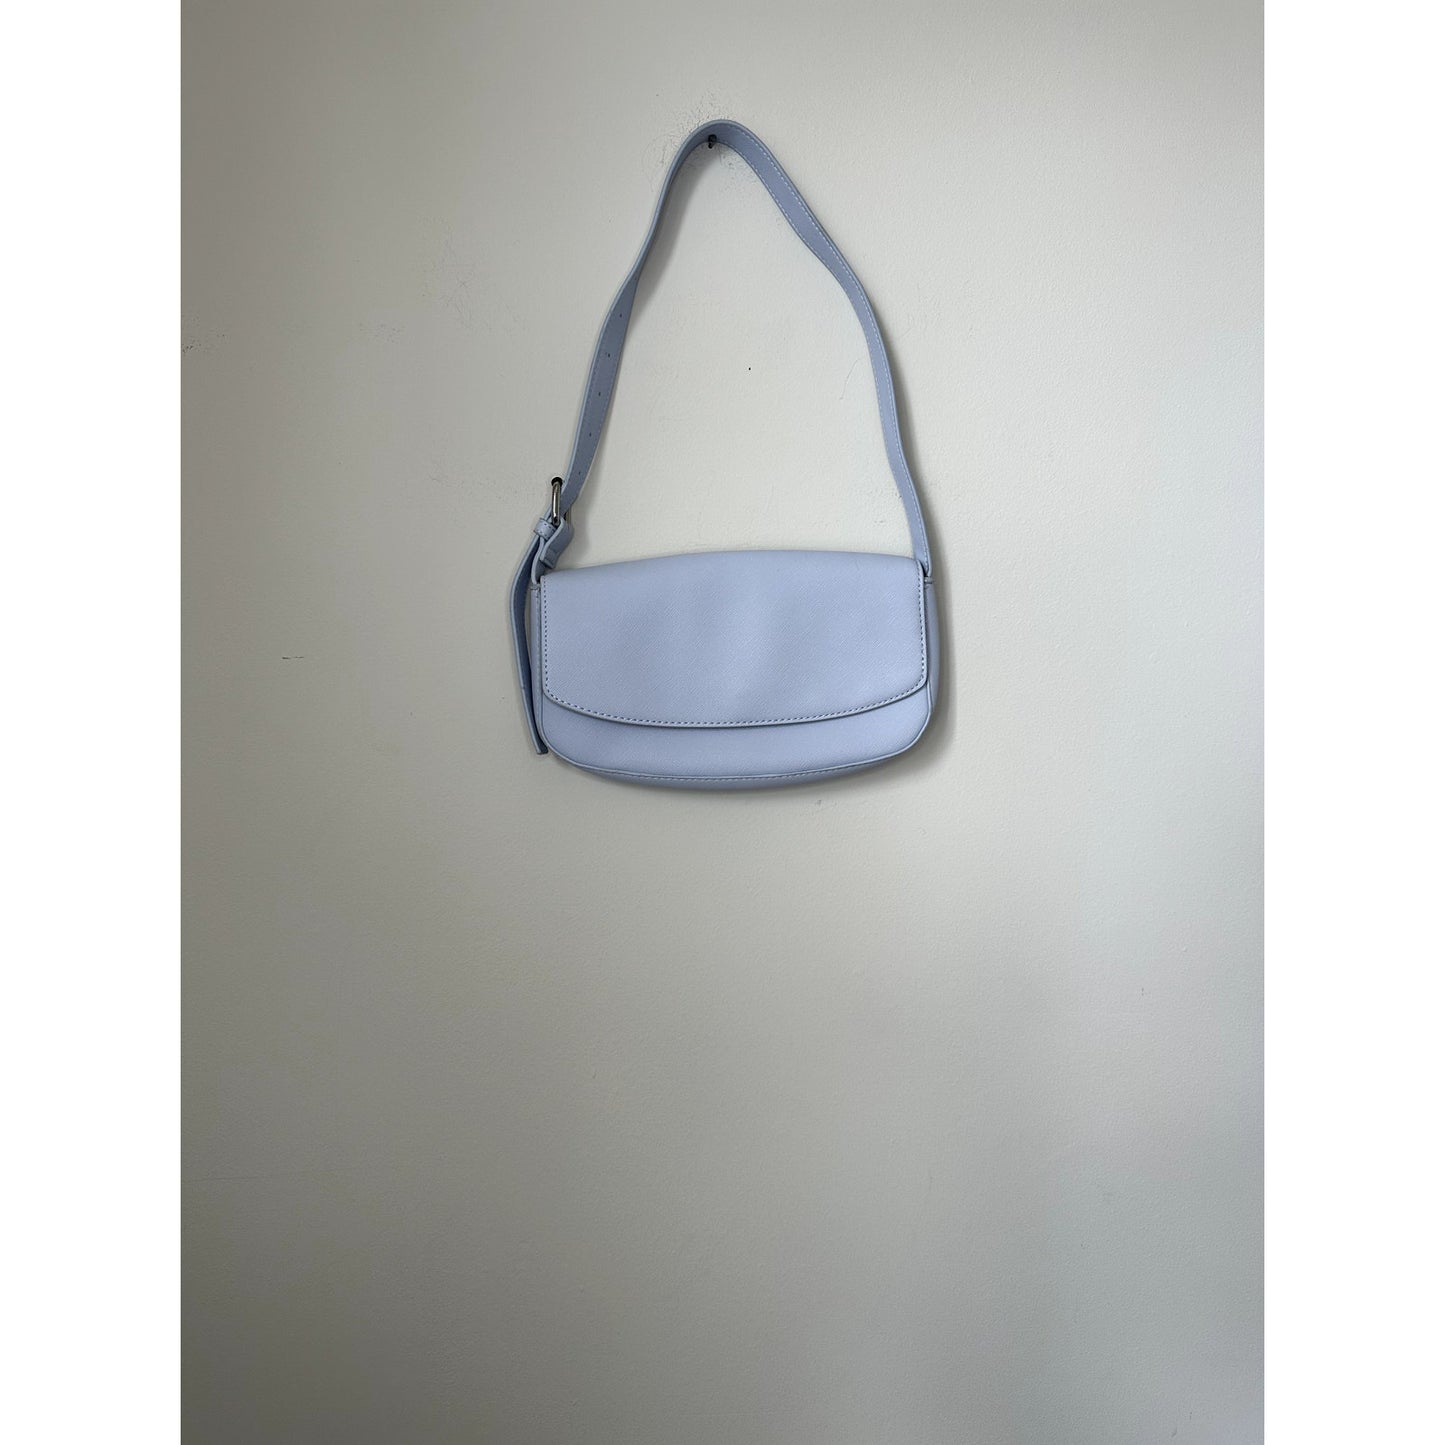 Forever 21 Small Blue Shoulder Bag